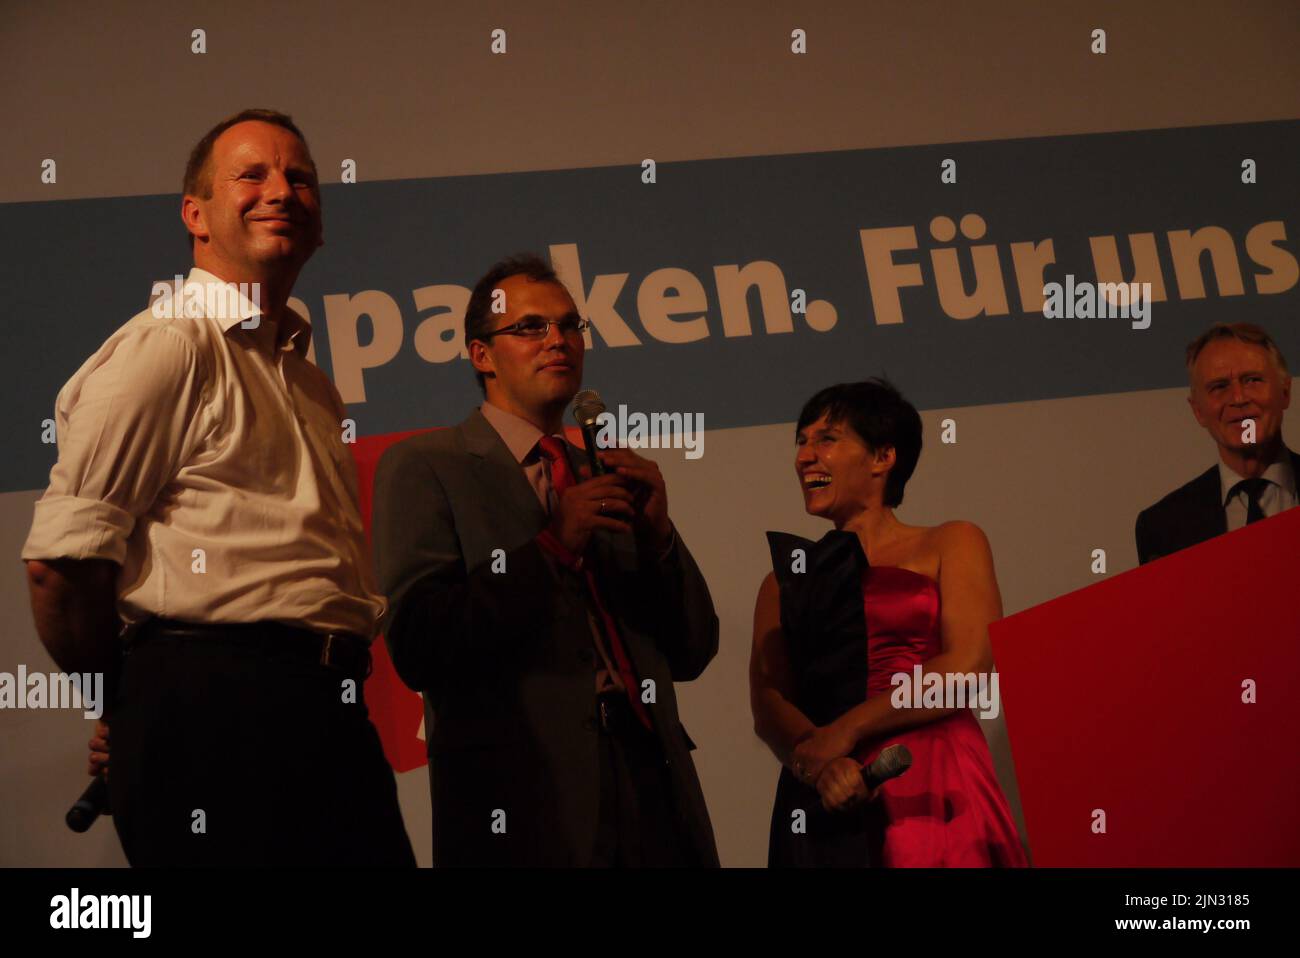 Johannes Kahrs strahlt mit breitem Lächeln bei einer Wahlkampfveranstaltung in Amburgo. Neben ihm der SPD-Politiker Christian Carstensen und eine Moderatorin. Ganz rechts im Bild ist der ehemaliste Hamburgische 1. Bürgermeister Hans Ulrich Klose Foto Stock